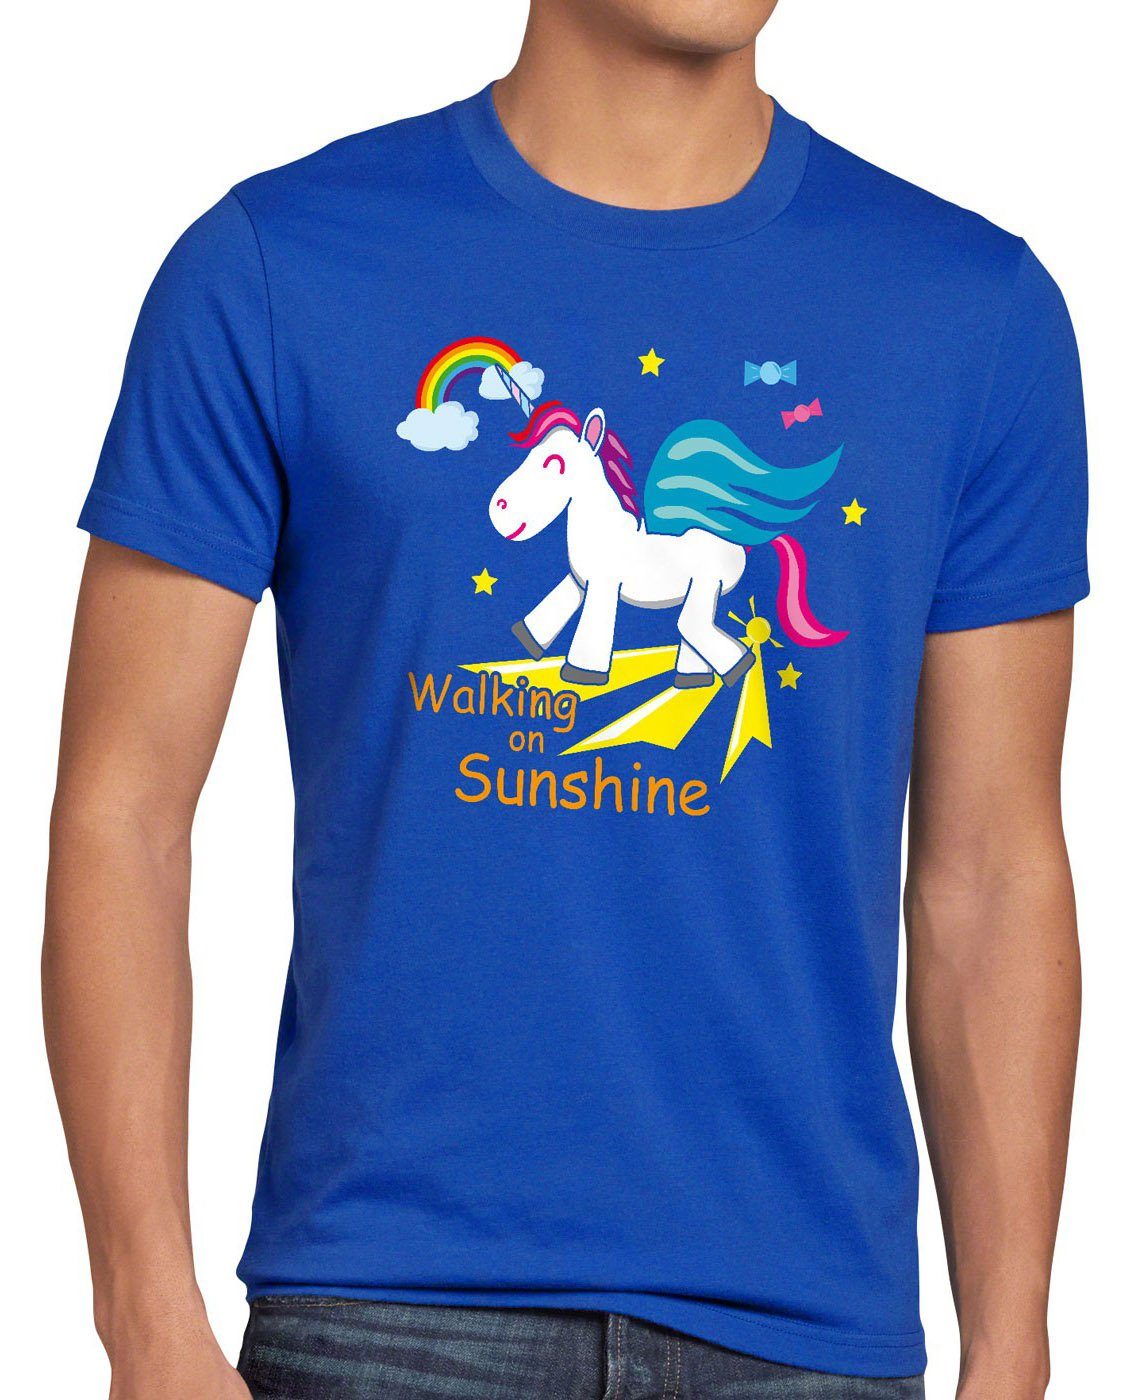 style3 Print-Shirt Herren Fun Walking T-Shirt Regenbogen on Sunshine Einhorn Kinder Spruch blau Unicorn